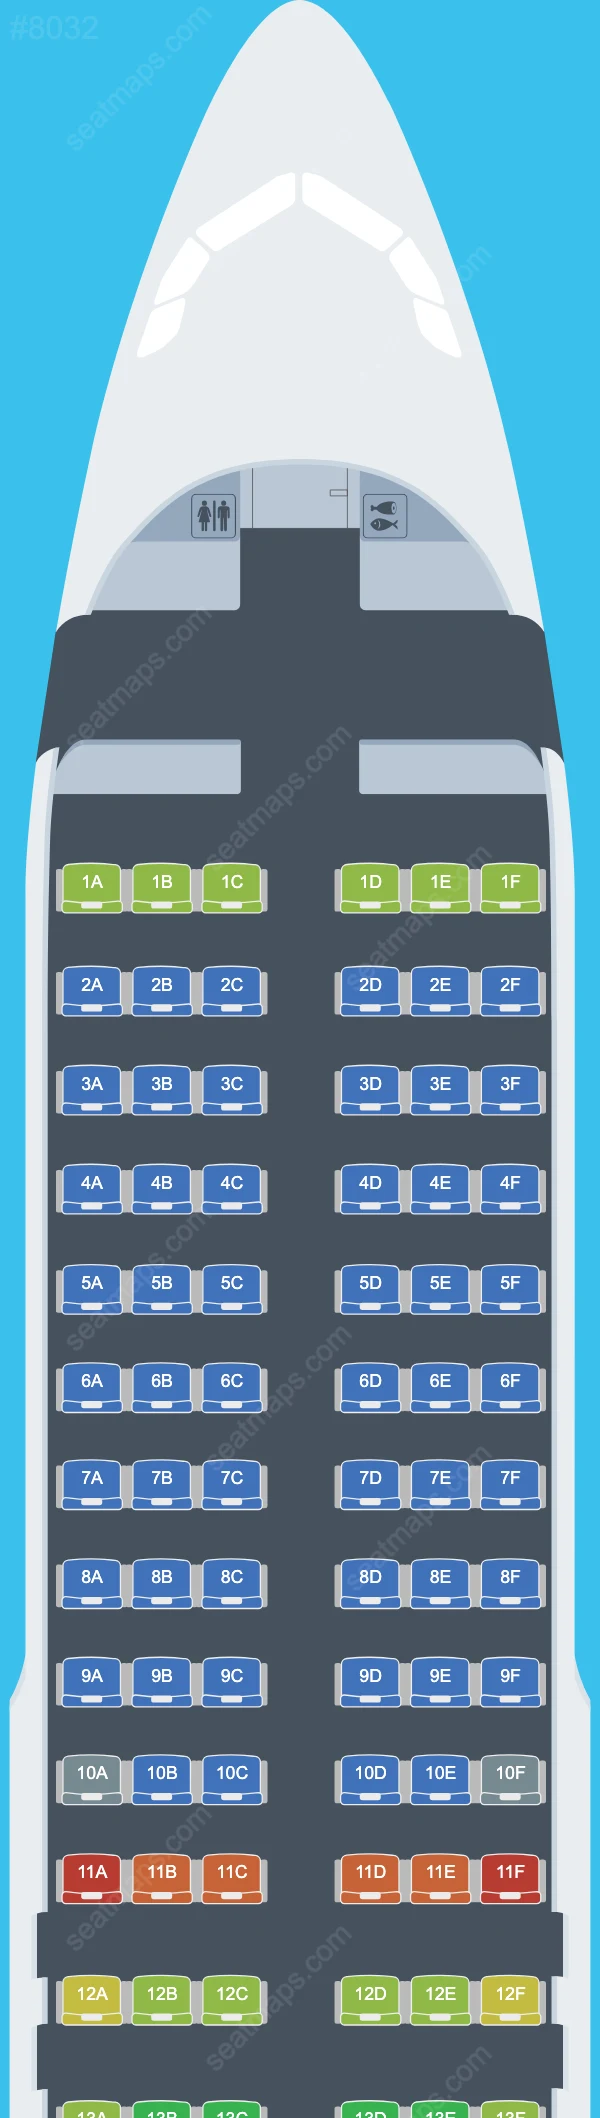 Air Serbia Airbus A320 Seat Maps A320-200 V.1